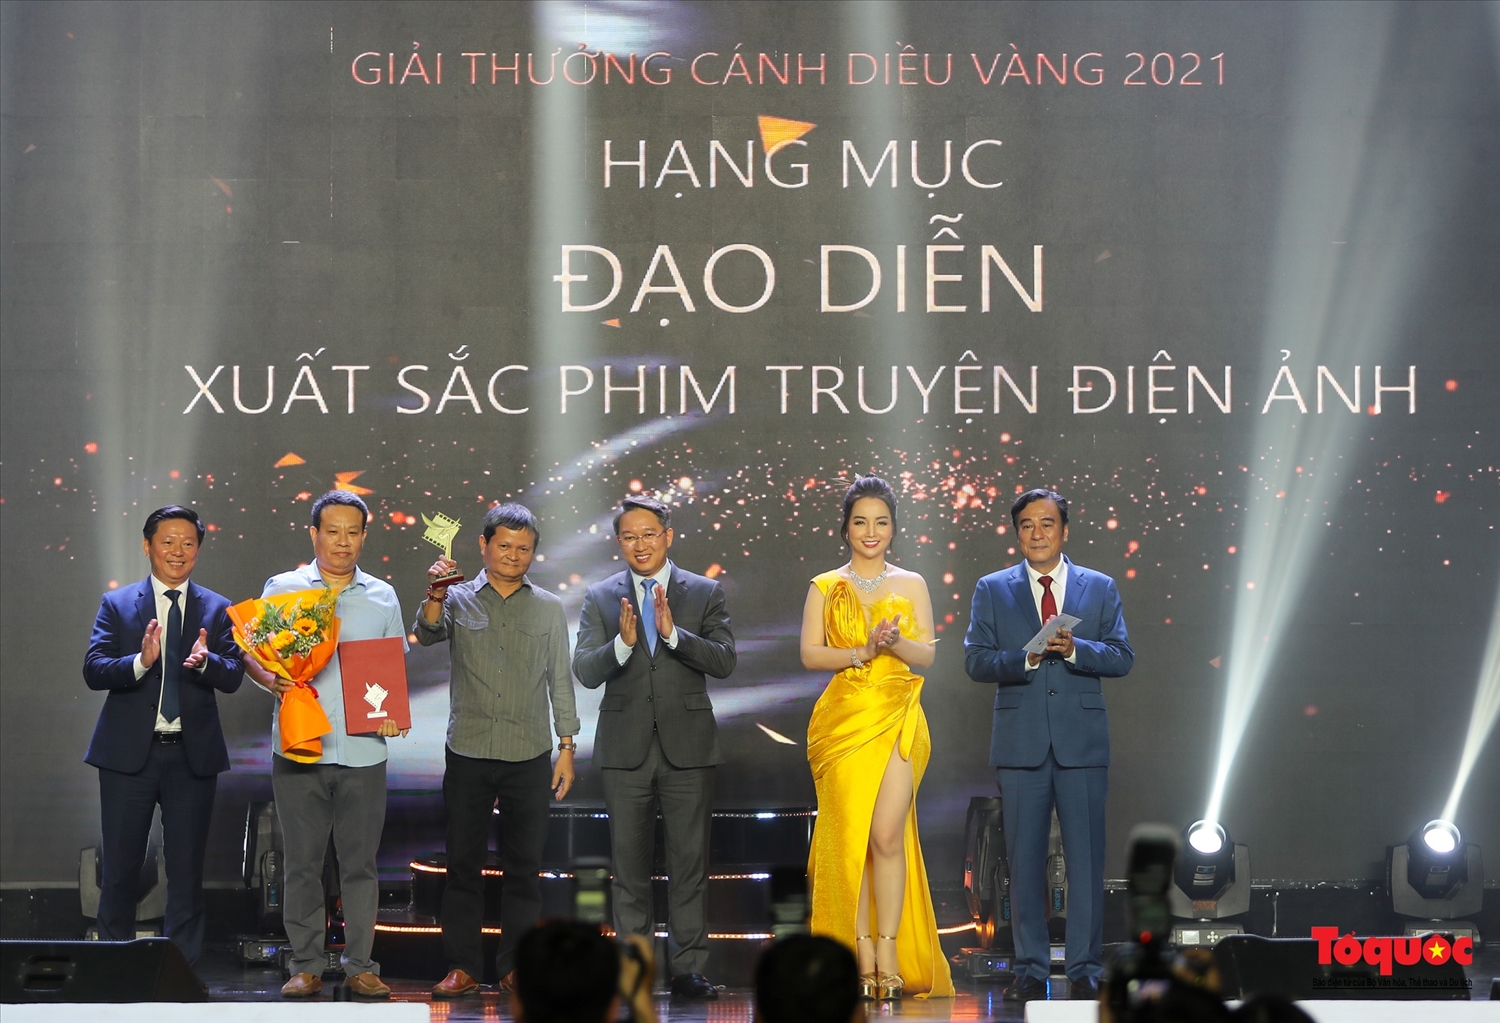 Giải Đạo diễn xuất sắc nhất thuộc về các đạo diễn: NSND Nguyễn Thanh Vân và Trần Chí Thành phim “Bình minh đỏ”.